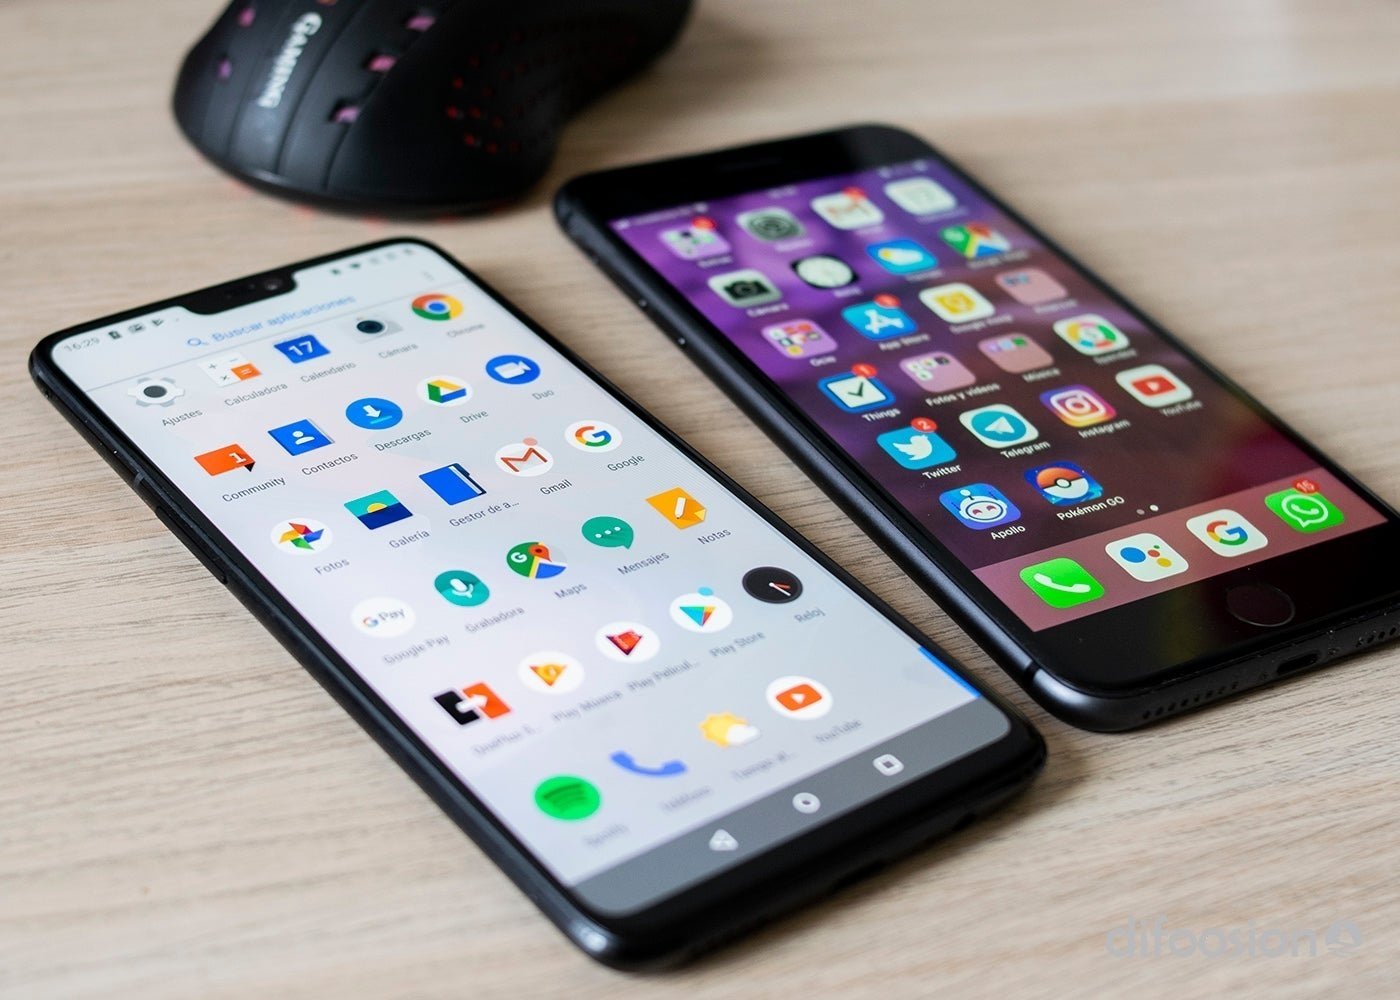 Los usuarios de Android son más honestos que los de iPhone, según un estudio